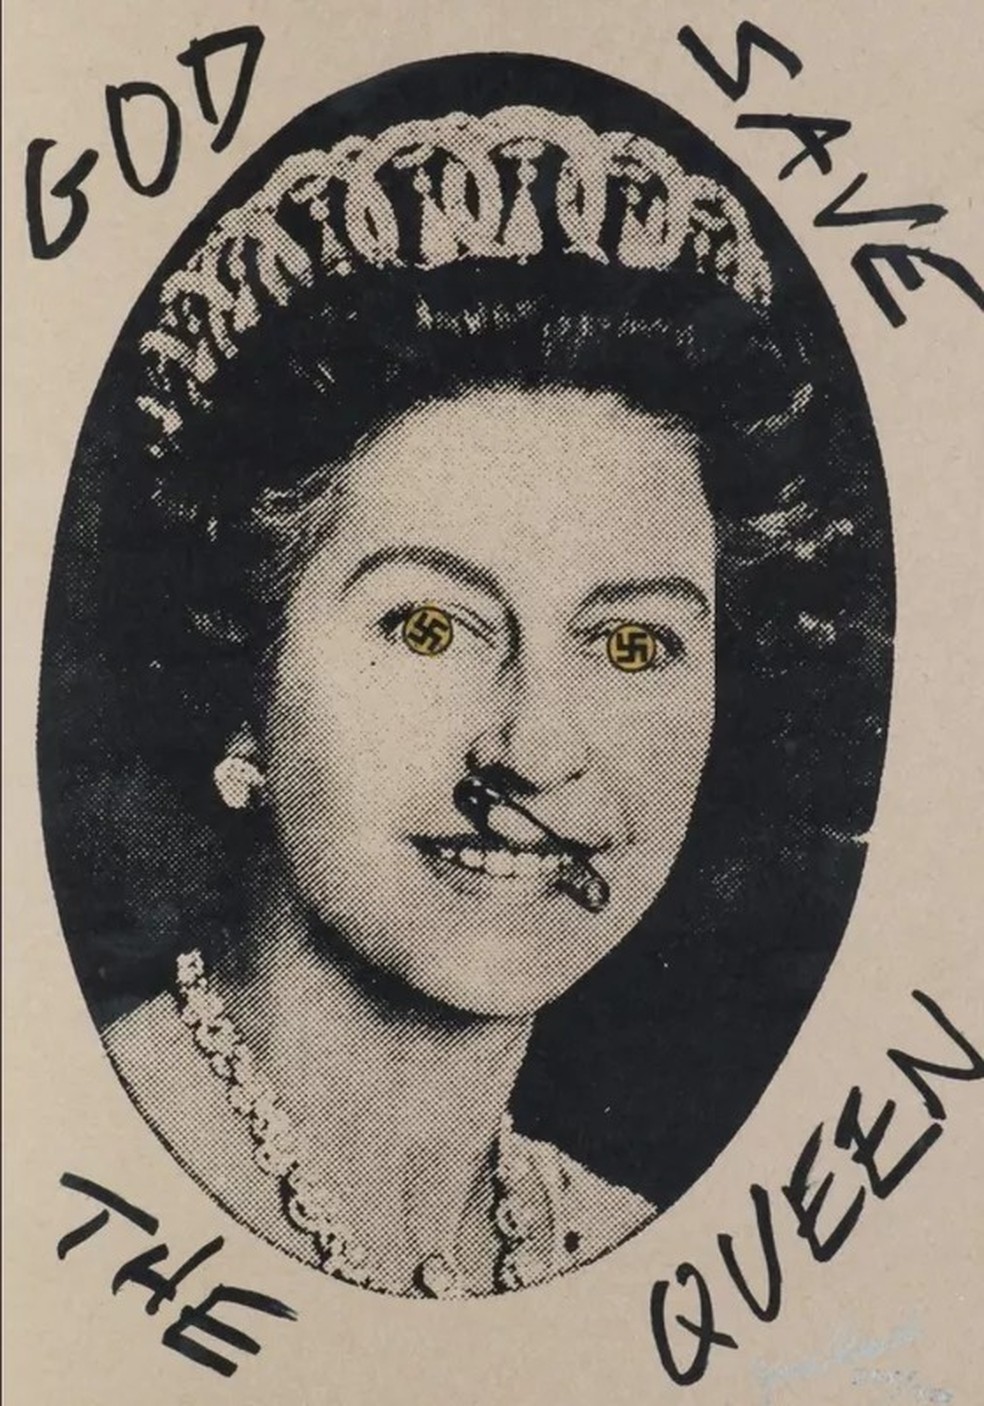 Arte de Jamie Reid da rainha Elizabeth II — Foto: Reprodução